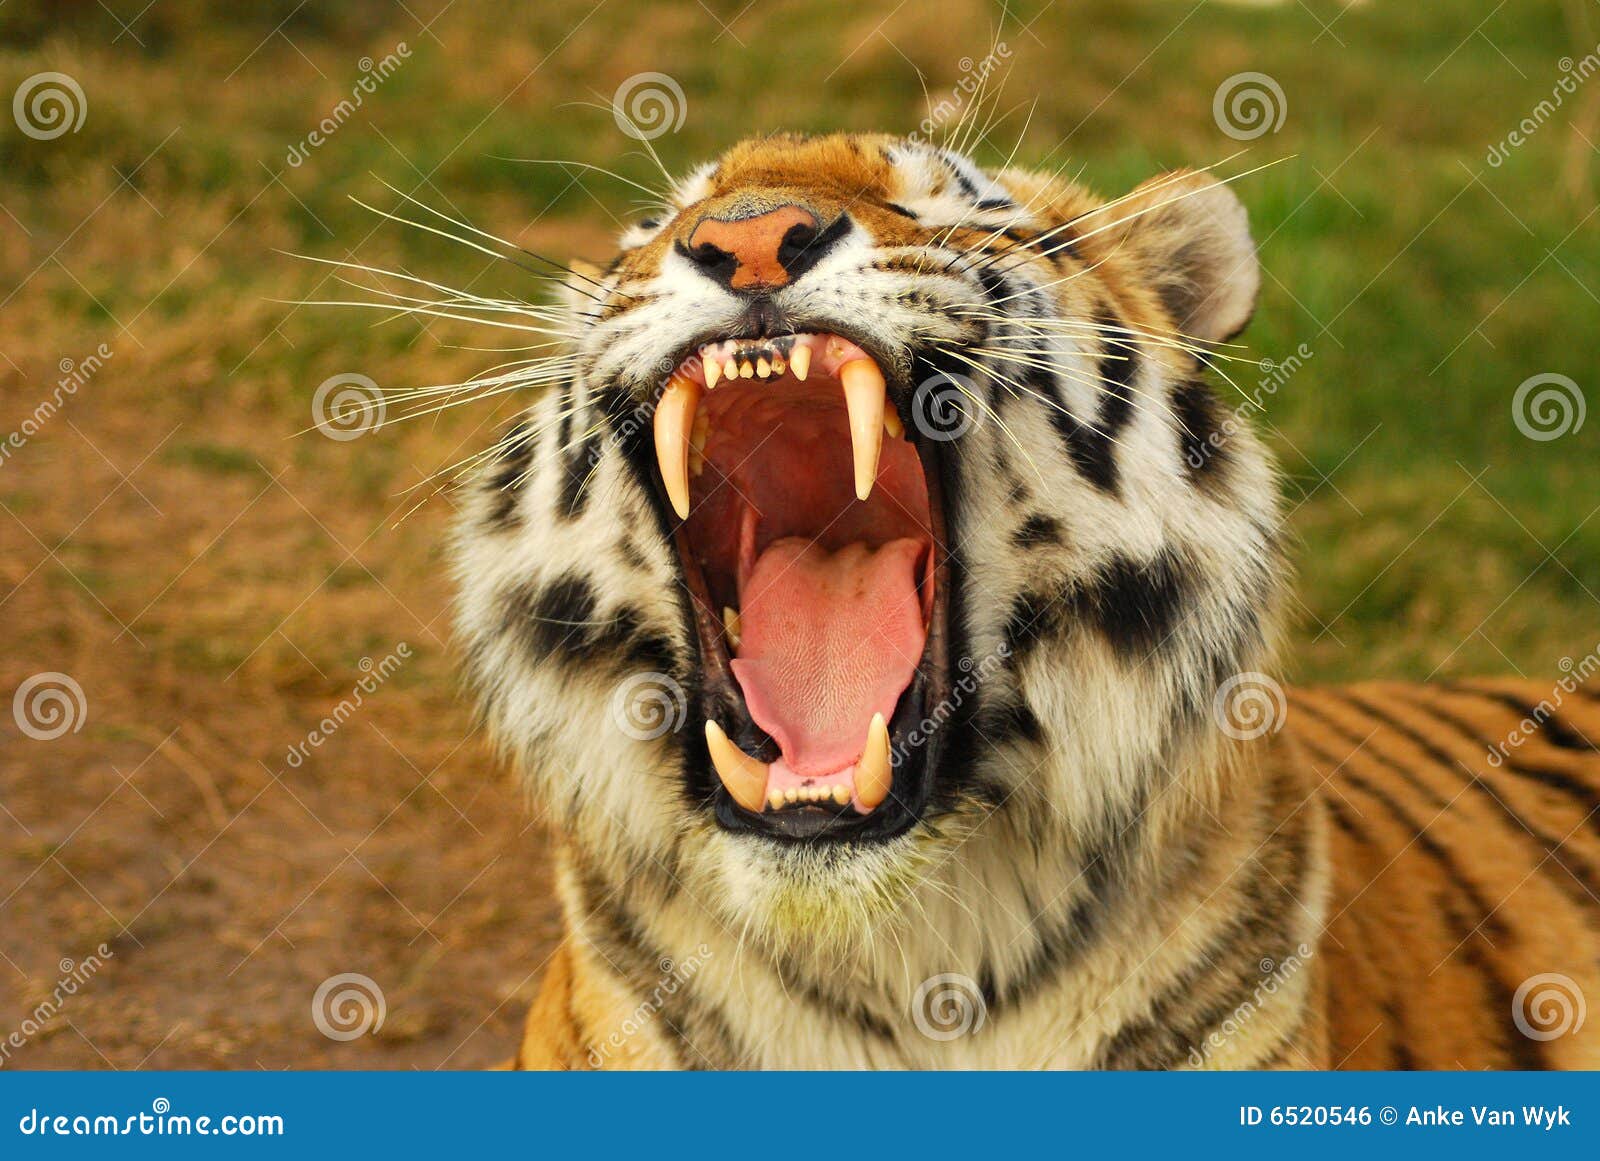 tiger predators